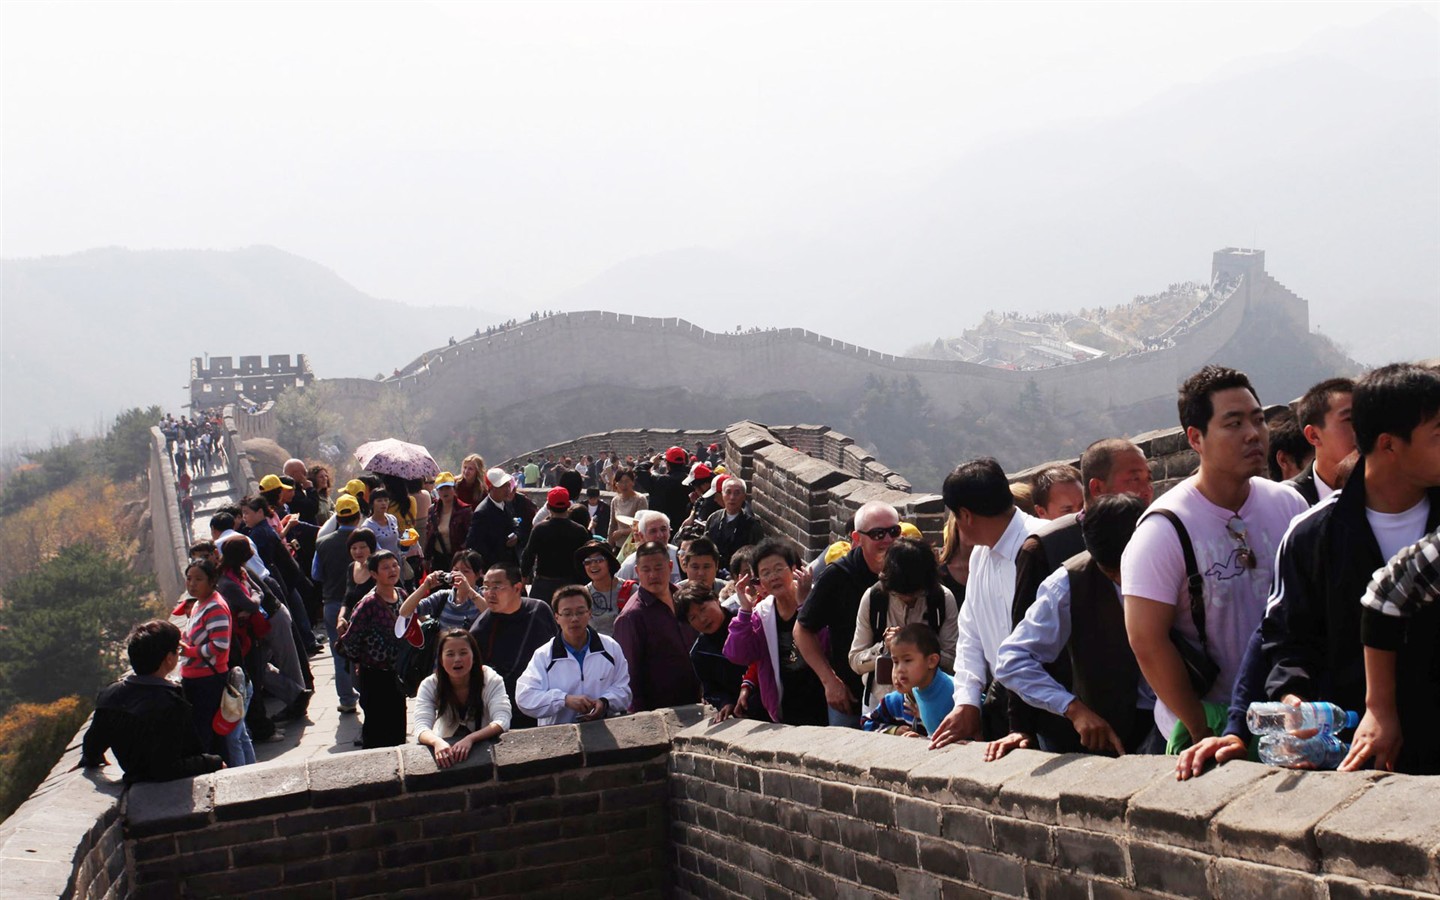 Beijing Tour - Badaling Great Wall (ggc works) #2 - 1440x900